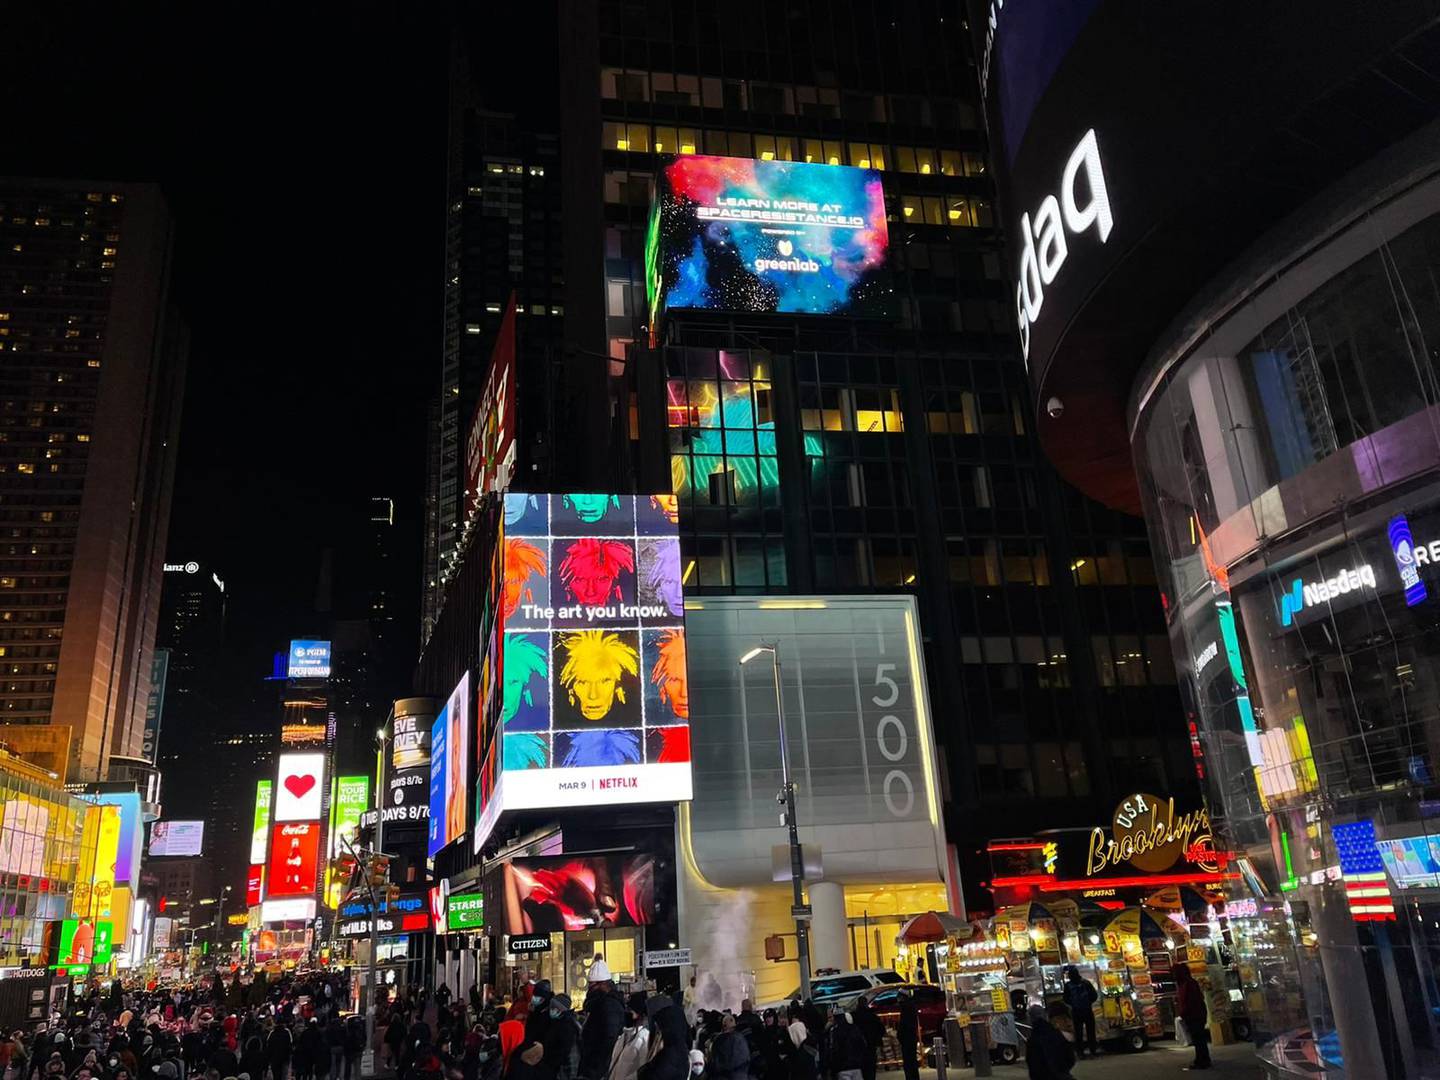 Téllez indicó que seleccionaron “Times Square para realizar el lanzamiento oficial pues es aquí donde se proyectan las colecciones de NFT más reconocidas del mundo”.dfd